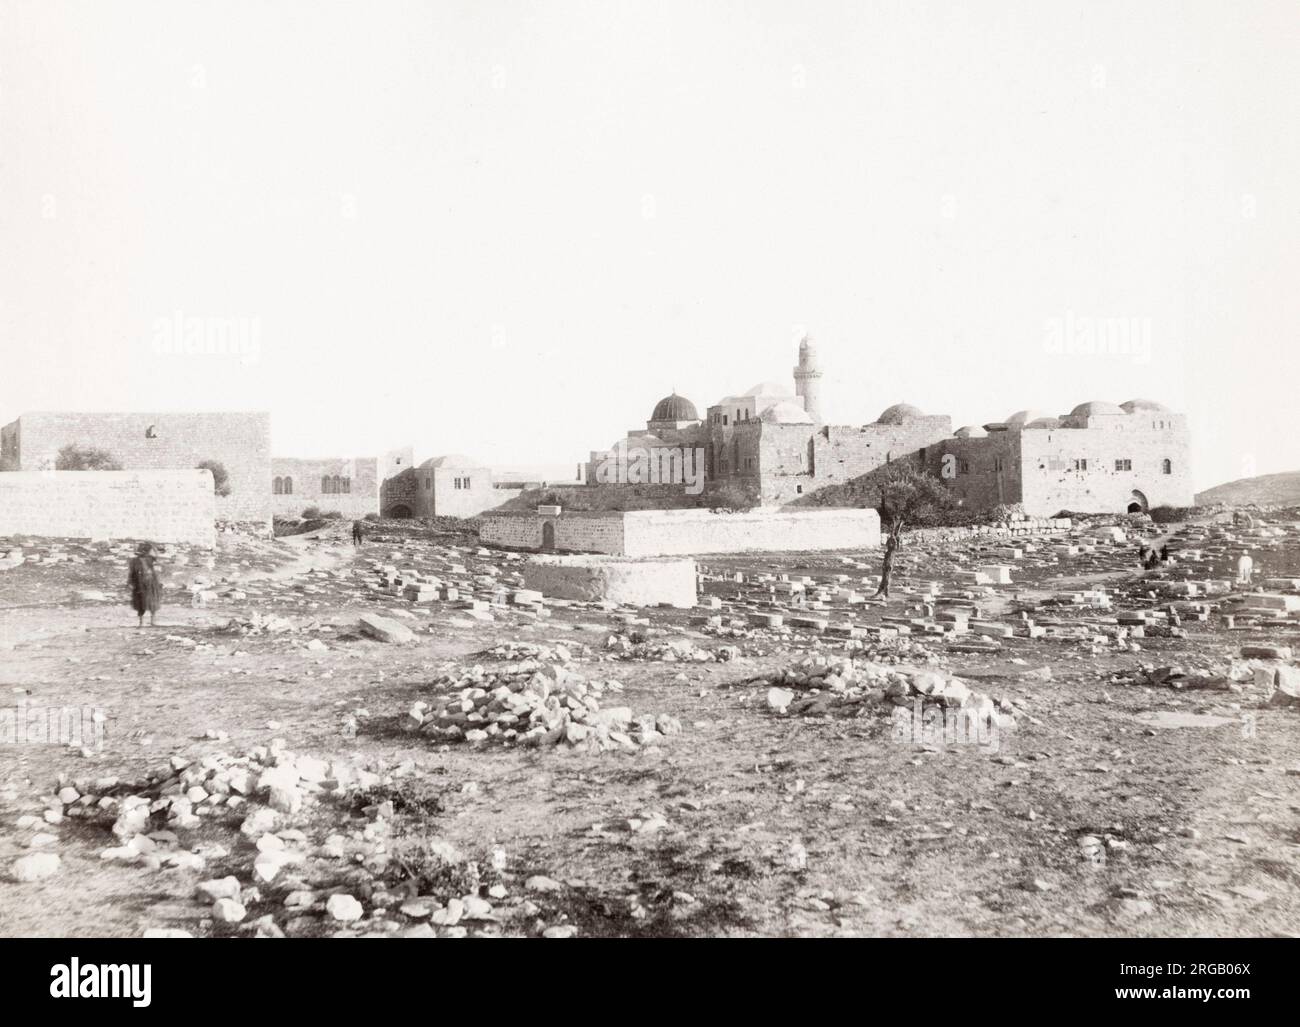 Oldtimer-Foto aus dem 19. Jahrhundert: Cenacle, auch bekannt als Oberraum und Grab von König David, Berg Zion, Jerusalem, Palästina (Israel). Bild c.1890. Stockfoto